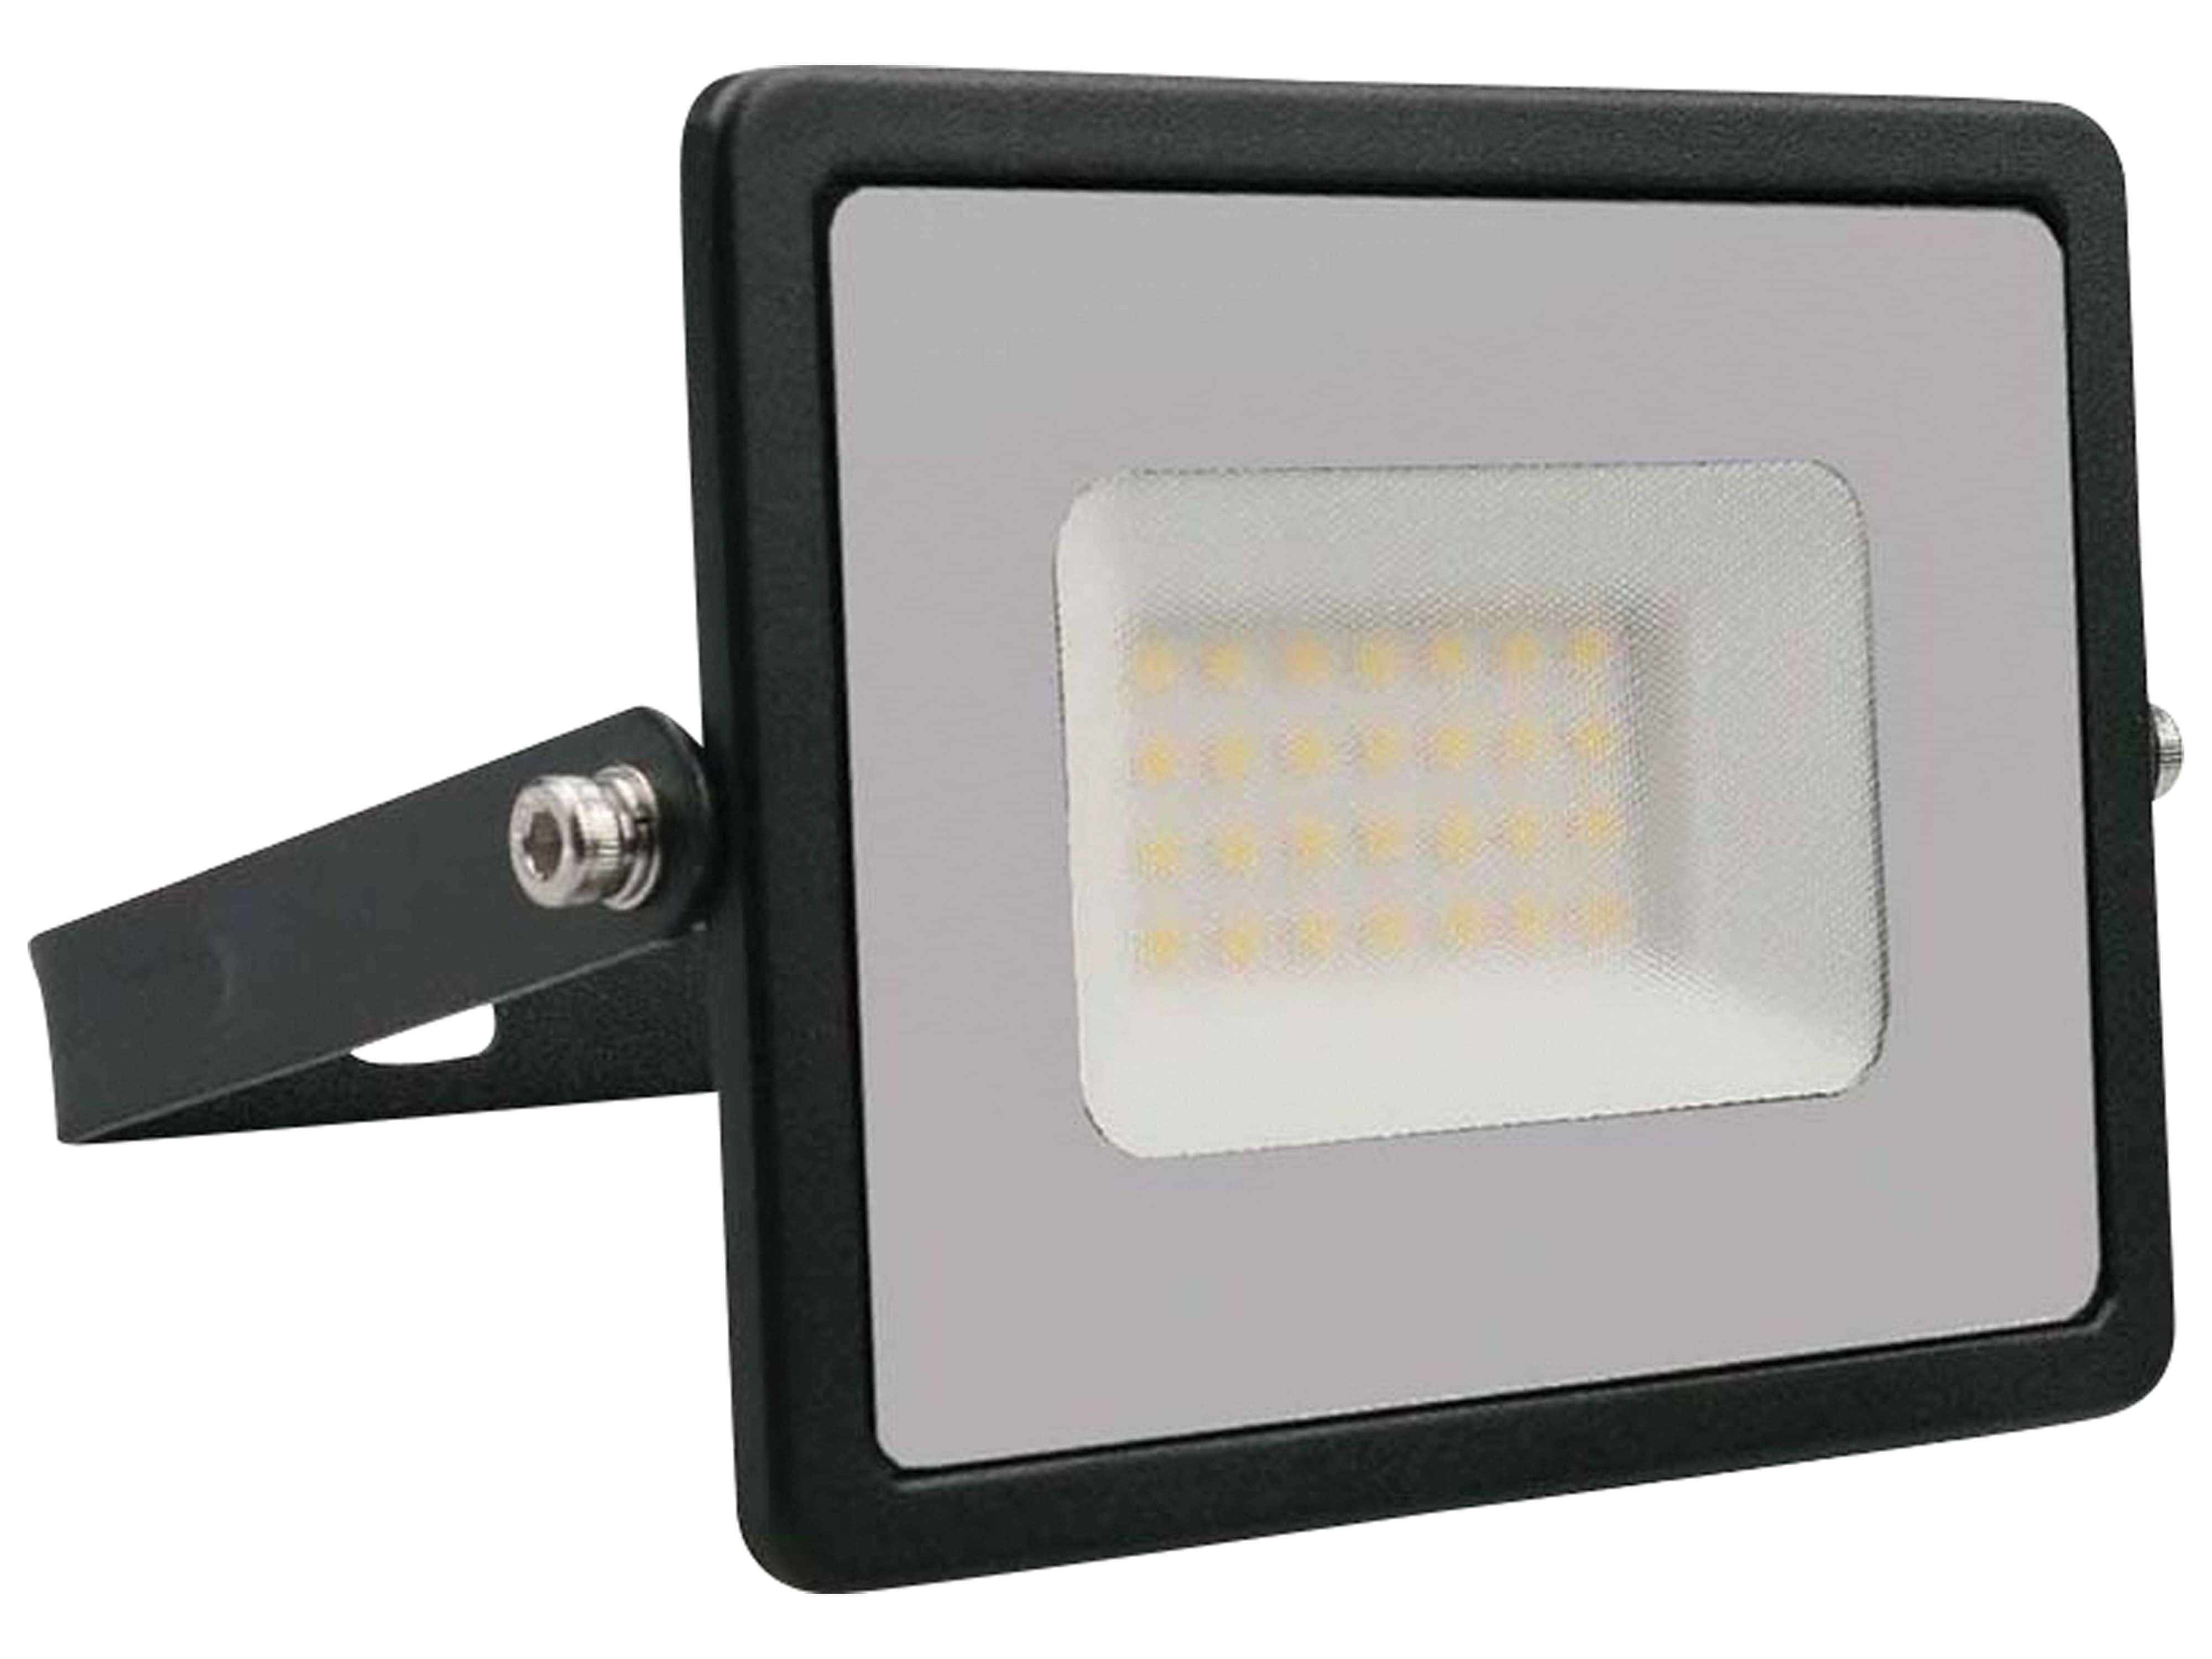 V-TAC LED-Fluter VT-4031, EEK: F, 30W, 2510lm, 4000K, schwarz